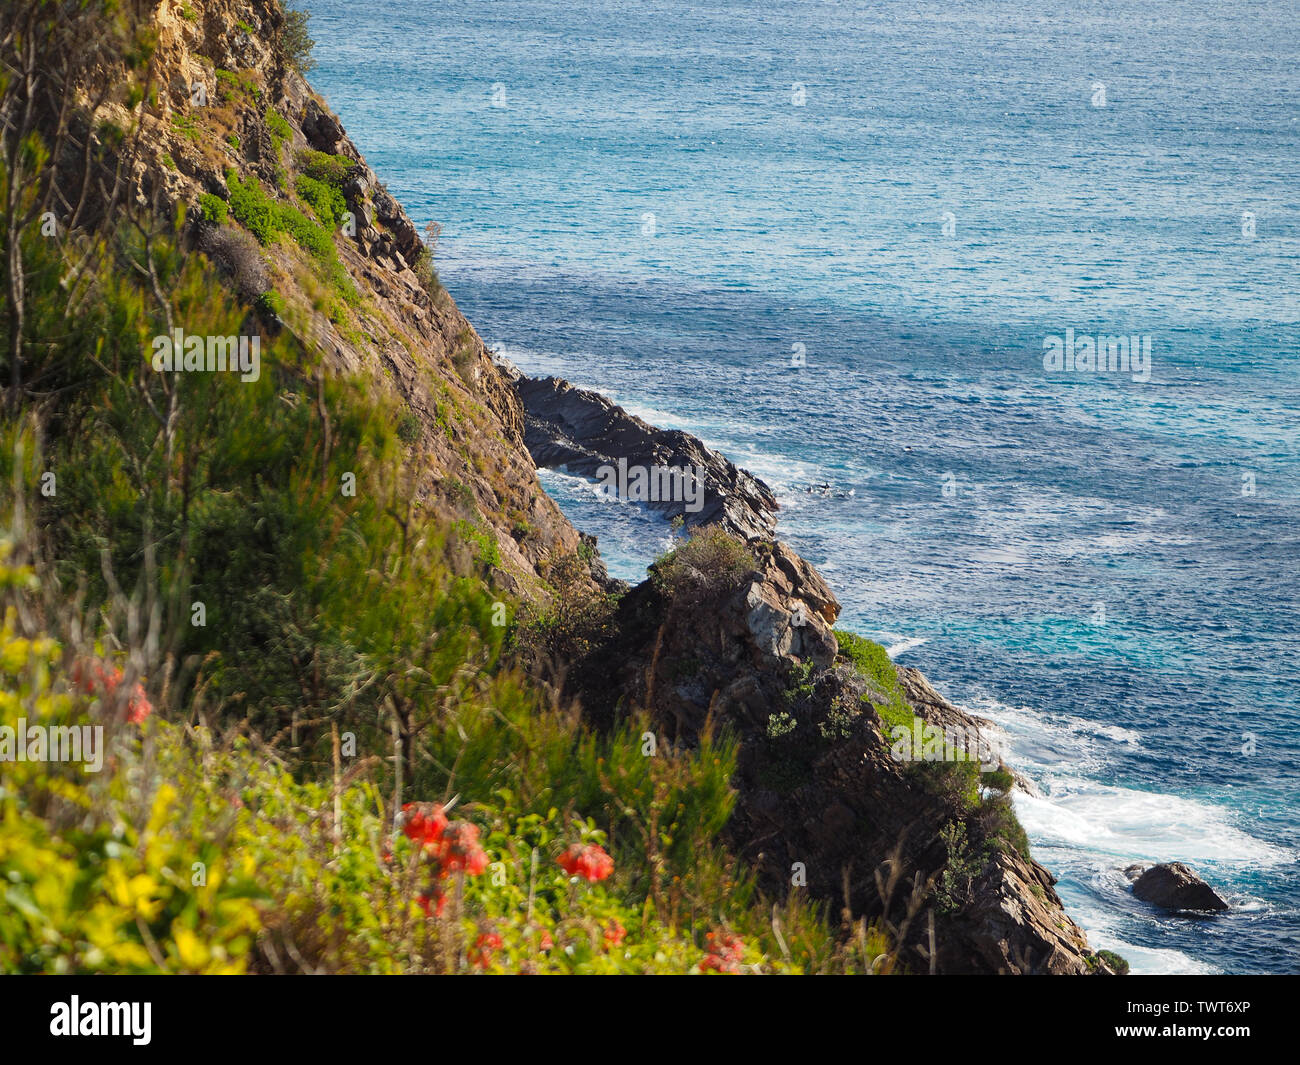 Vista sul promontorio dello splendido Oceano Pacifico blu, acqua in pooled e vegetazione verde sulla scogliera rocciosa, Forster NSW Australia Foto Stock